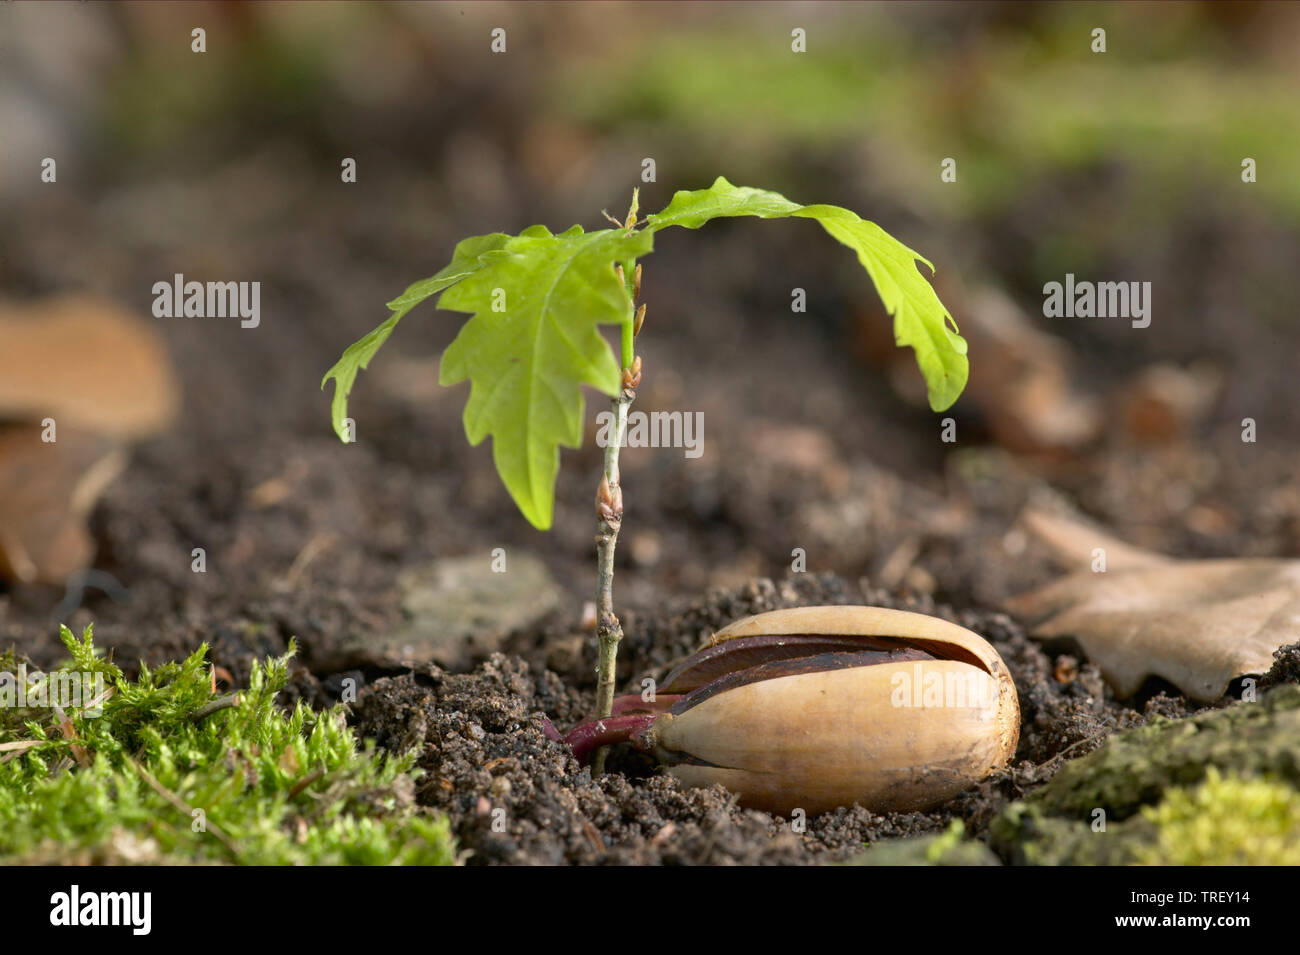 Le chêne commun, le chêne pédonculé (Quercus robur). Acorn en germination. Allemagne Banque D'Images